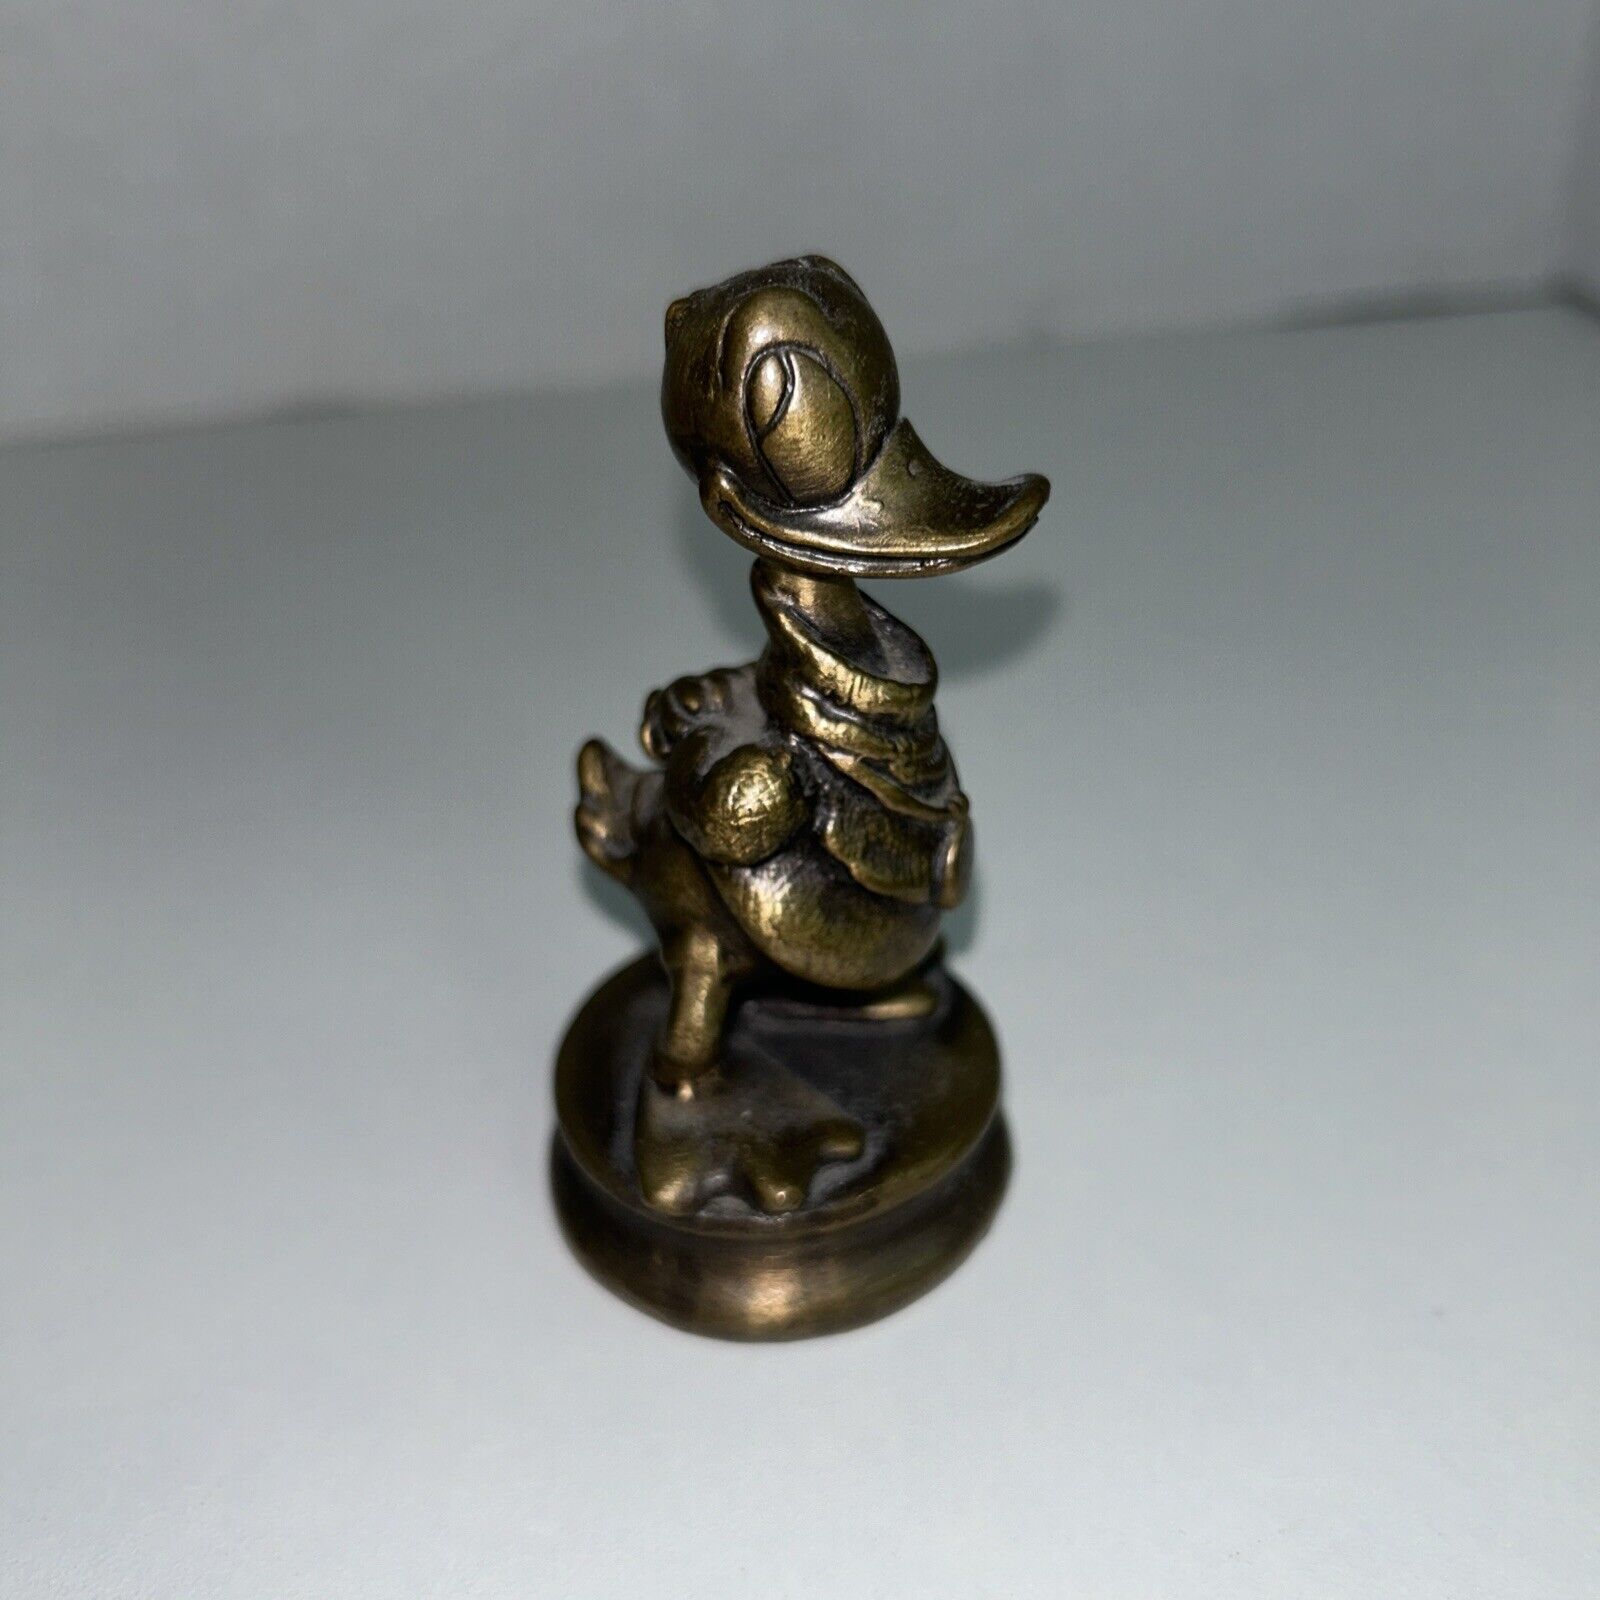 Extremely Rare Walt Disney Donald Duck Bronze Statue Hummelwerk 1983 3”